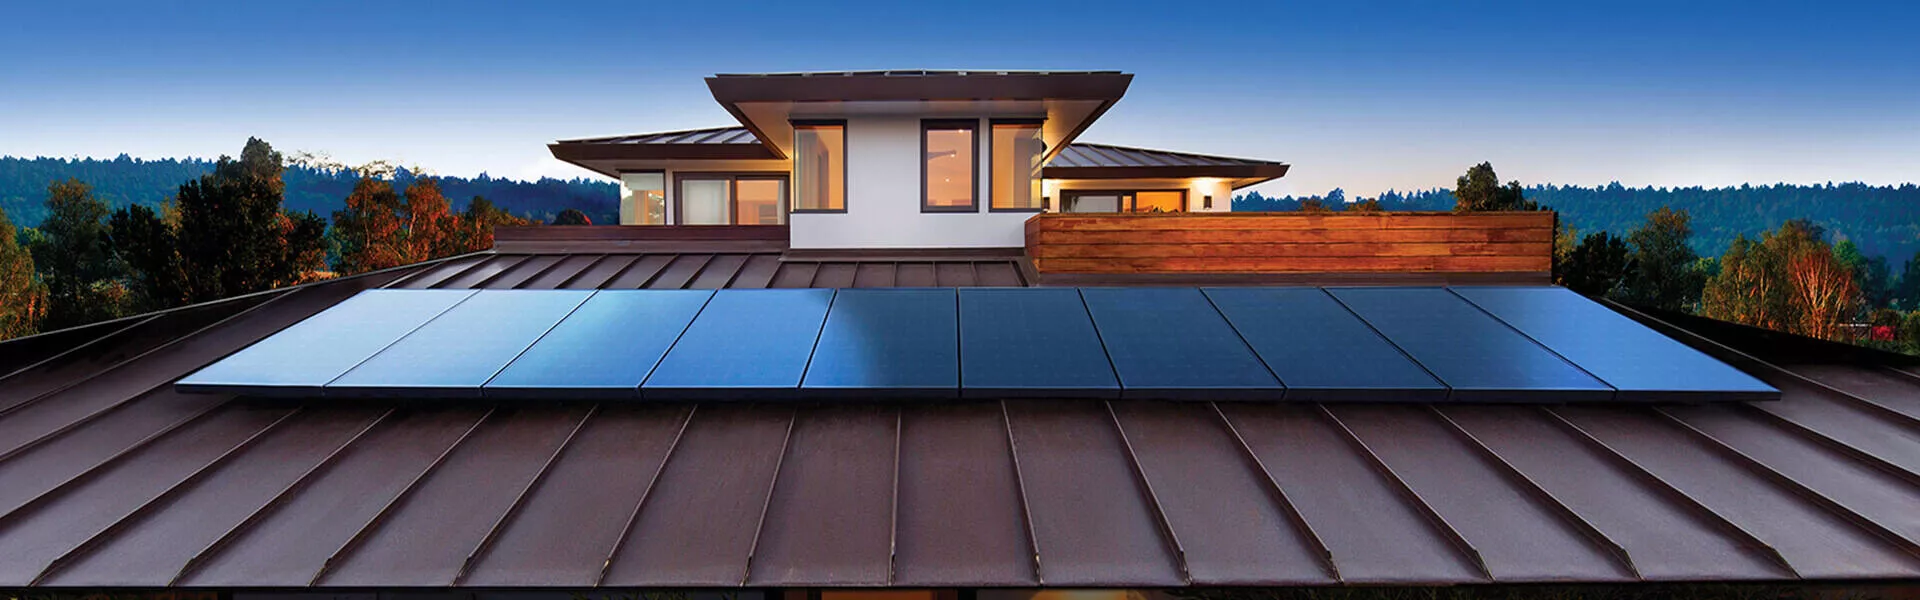 Residential Solar